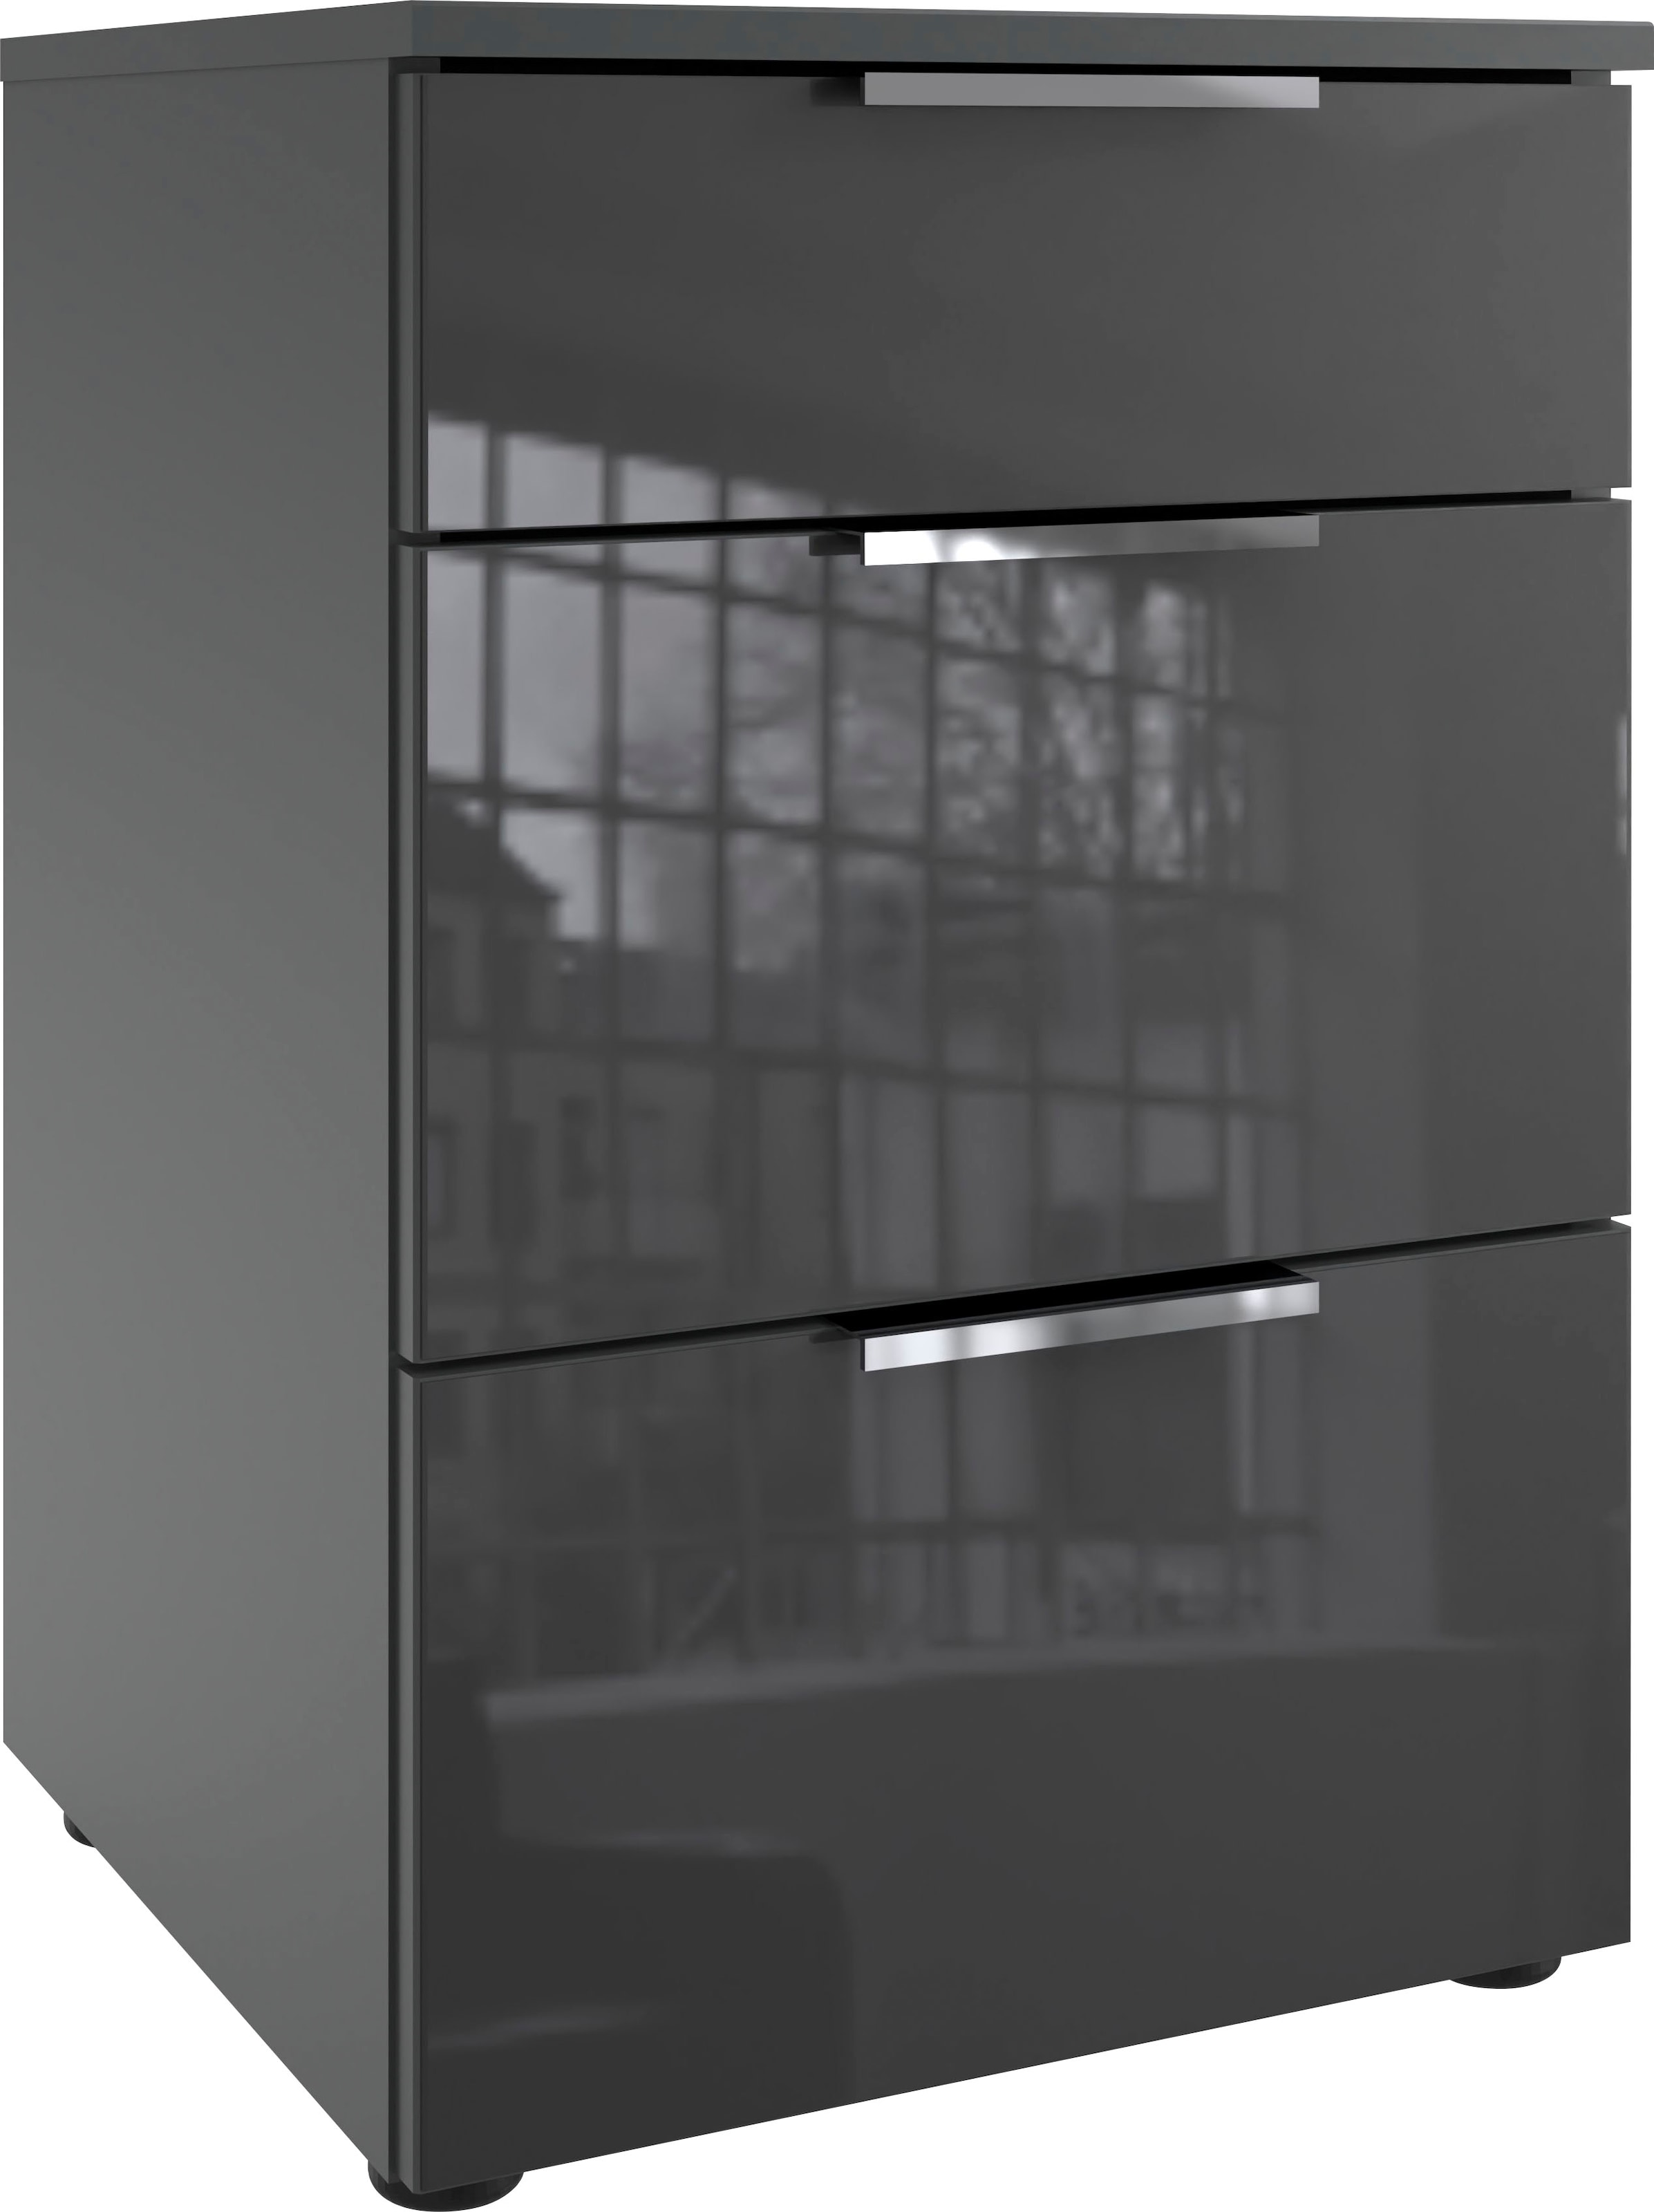 Wimex Nachtkommode »Level36 C by fresh to go«, mit Glaselementen auf der Front, soft-close Funktion, 41cm breit